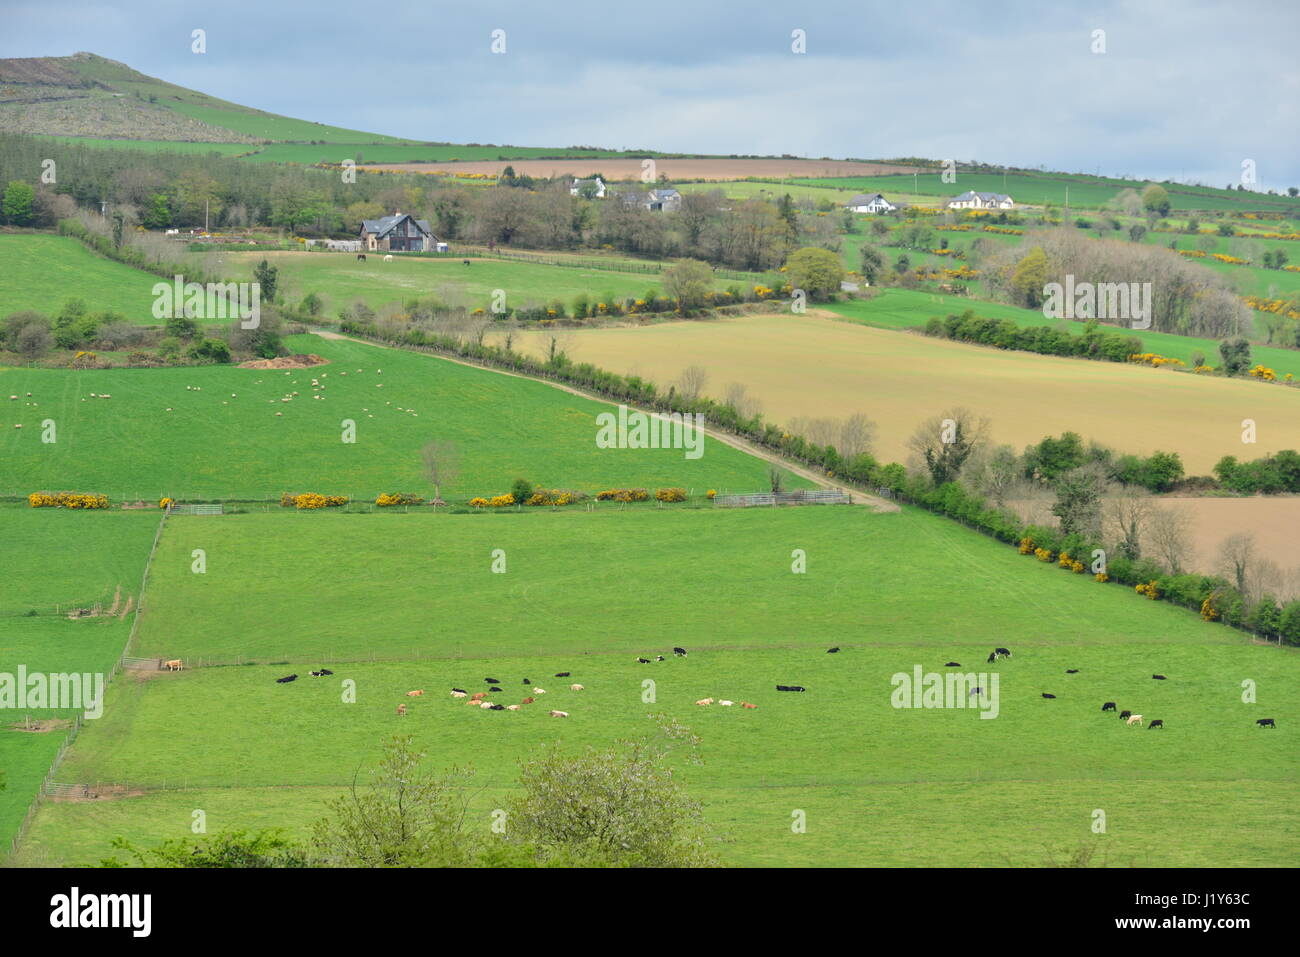 The farmland of Ireland Stock Photo